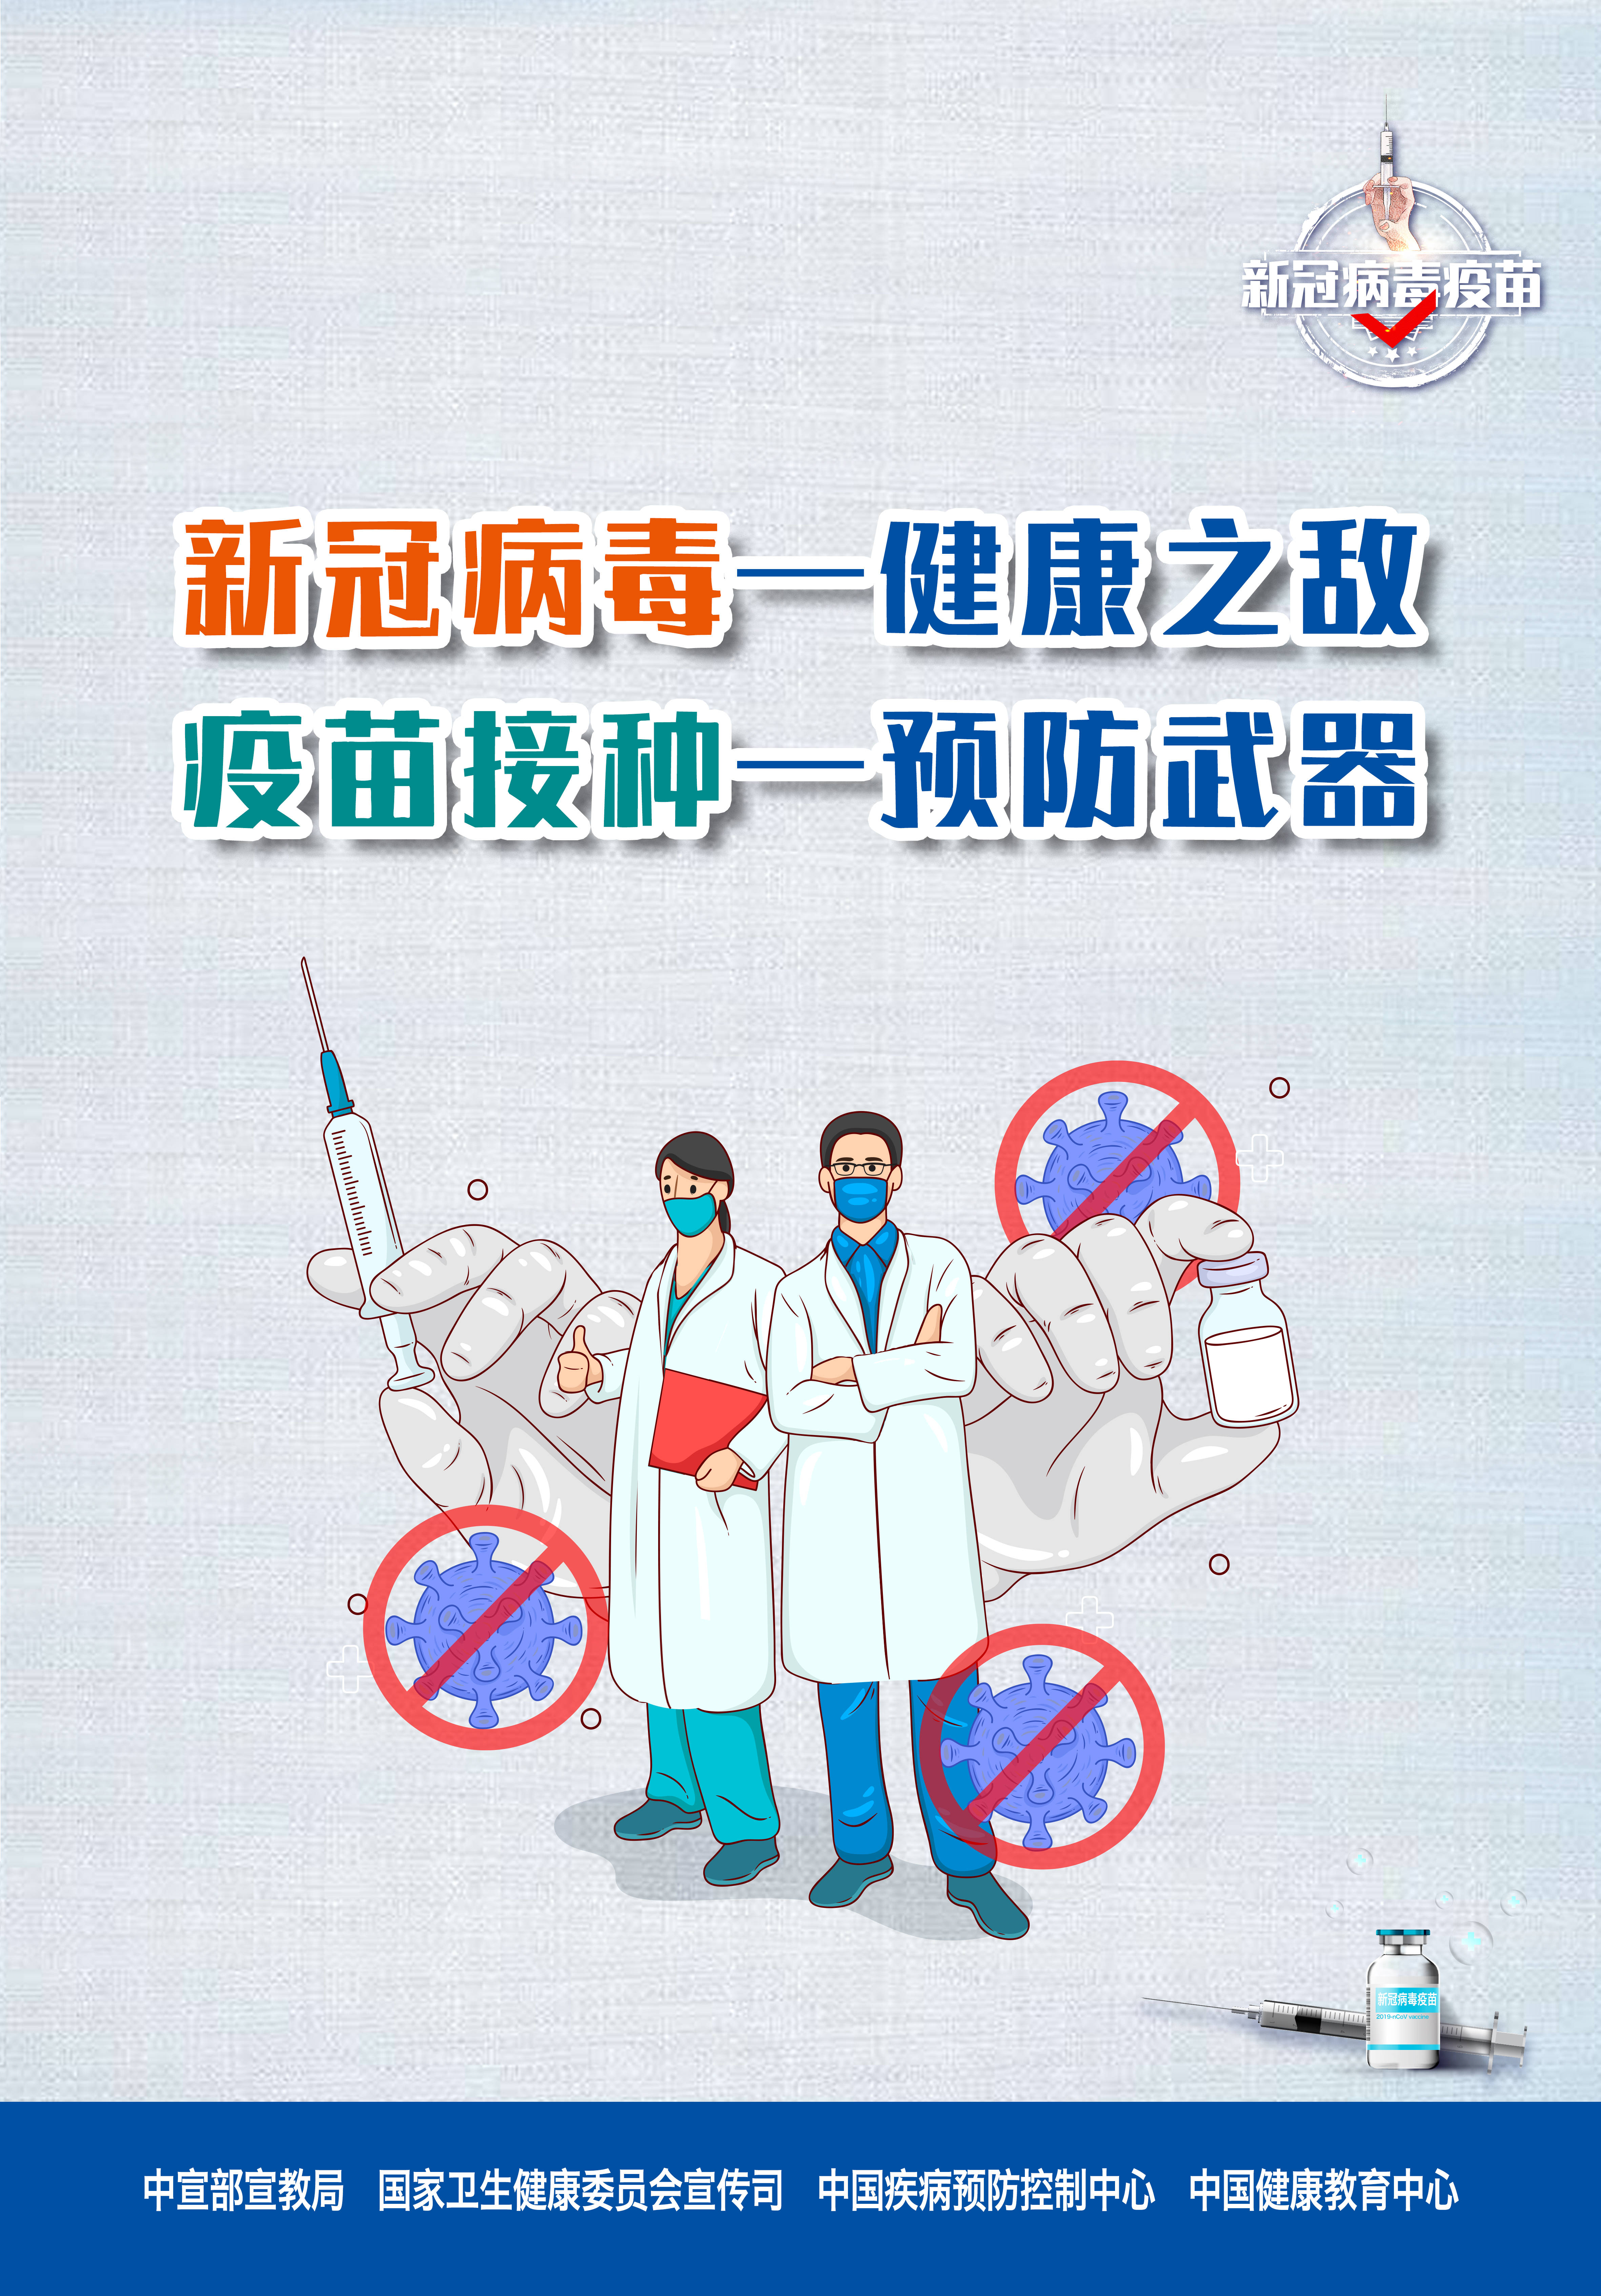 "新冠疫苗接种"主题宣传海报,宣传片